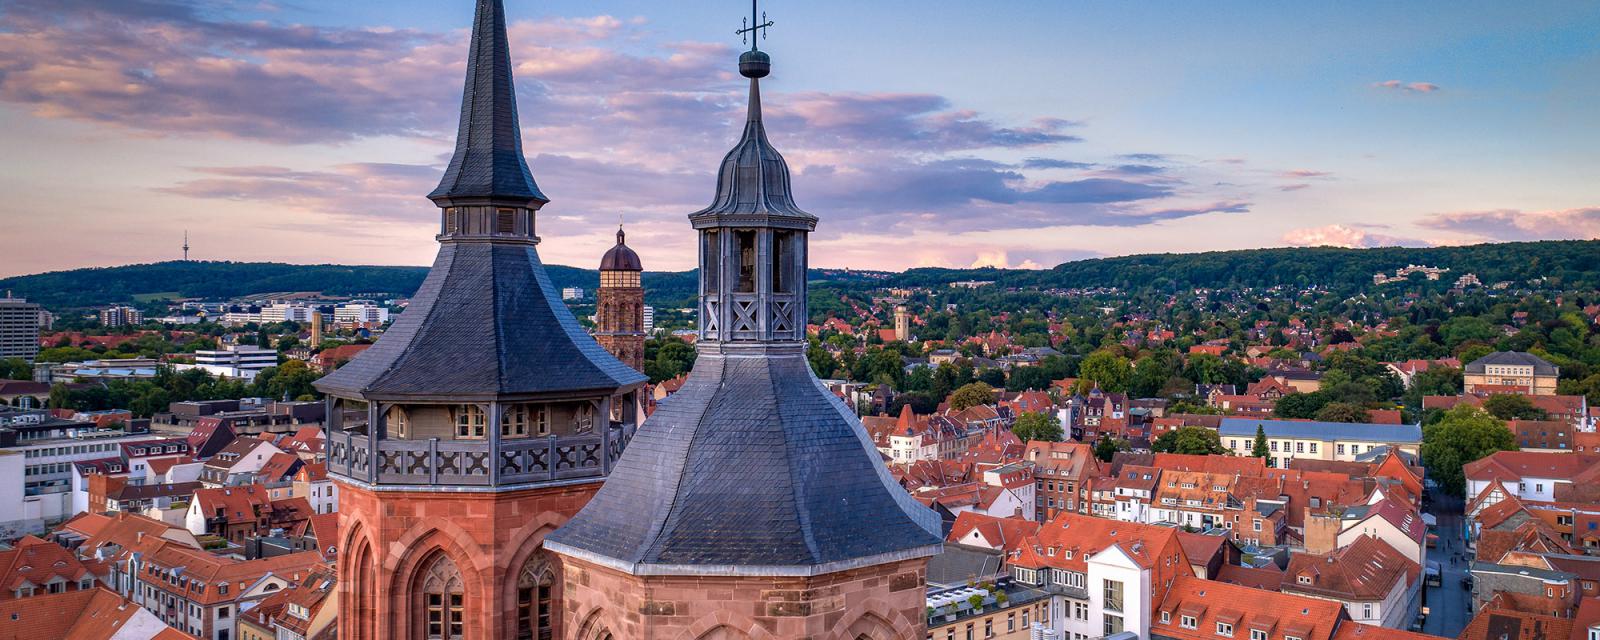 De beste tips voor een stedentrip naar Göttingen 